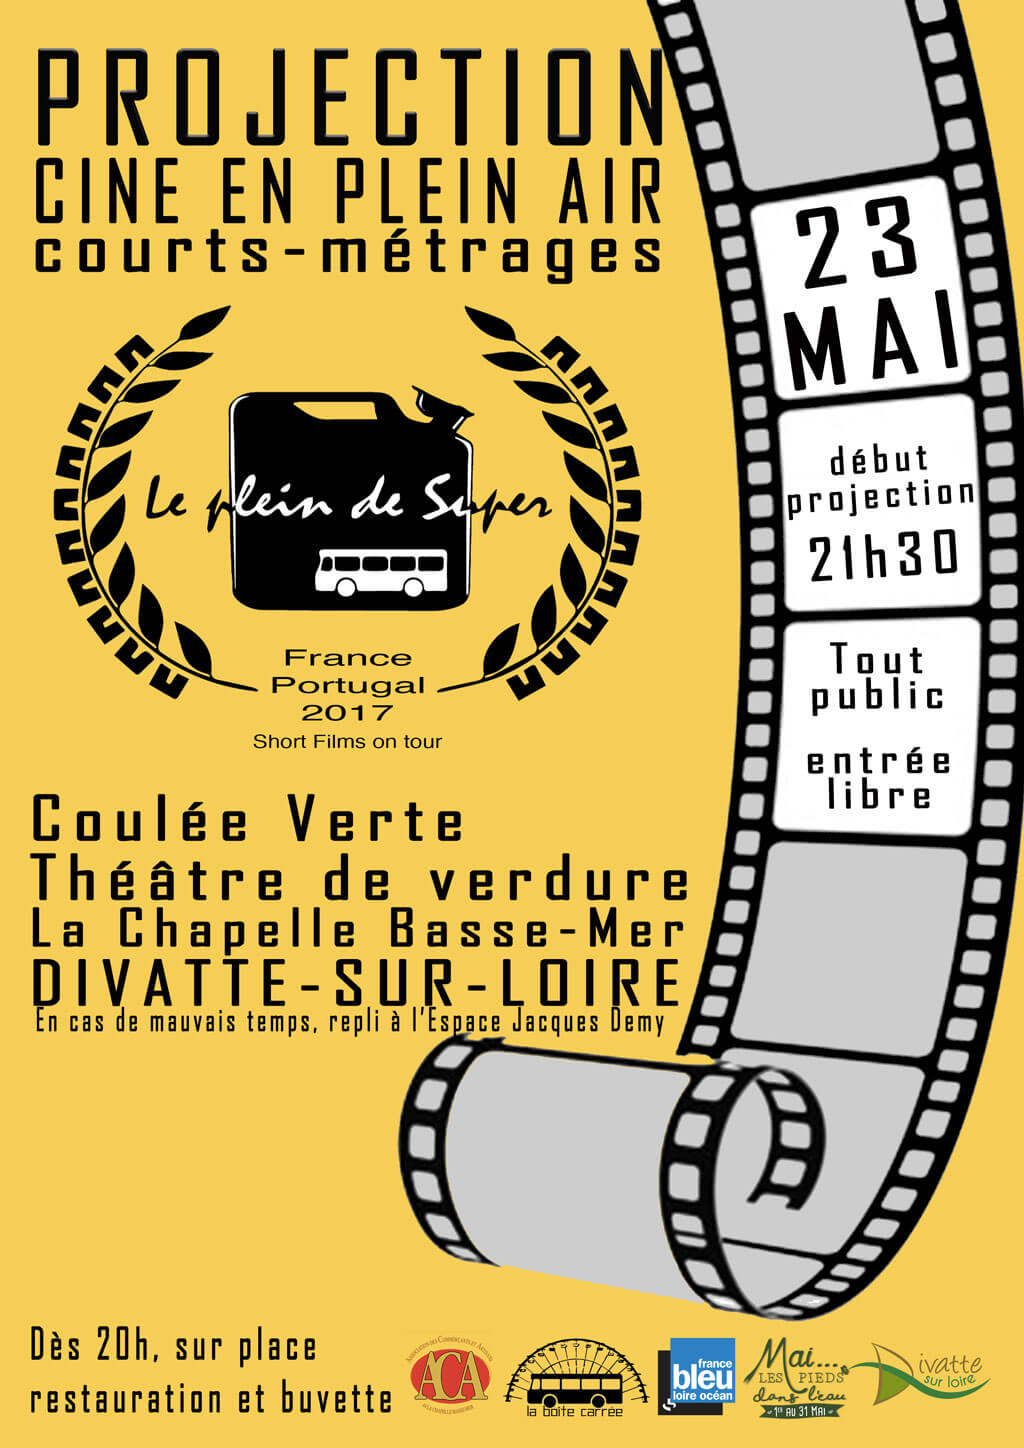 Le cinéma ambulant du plein de Super à Divatte-sur-Loire